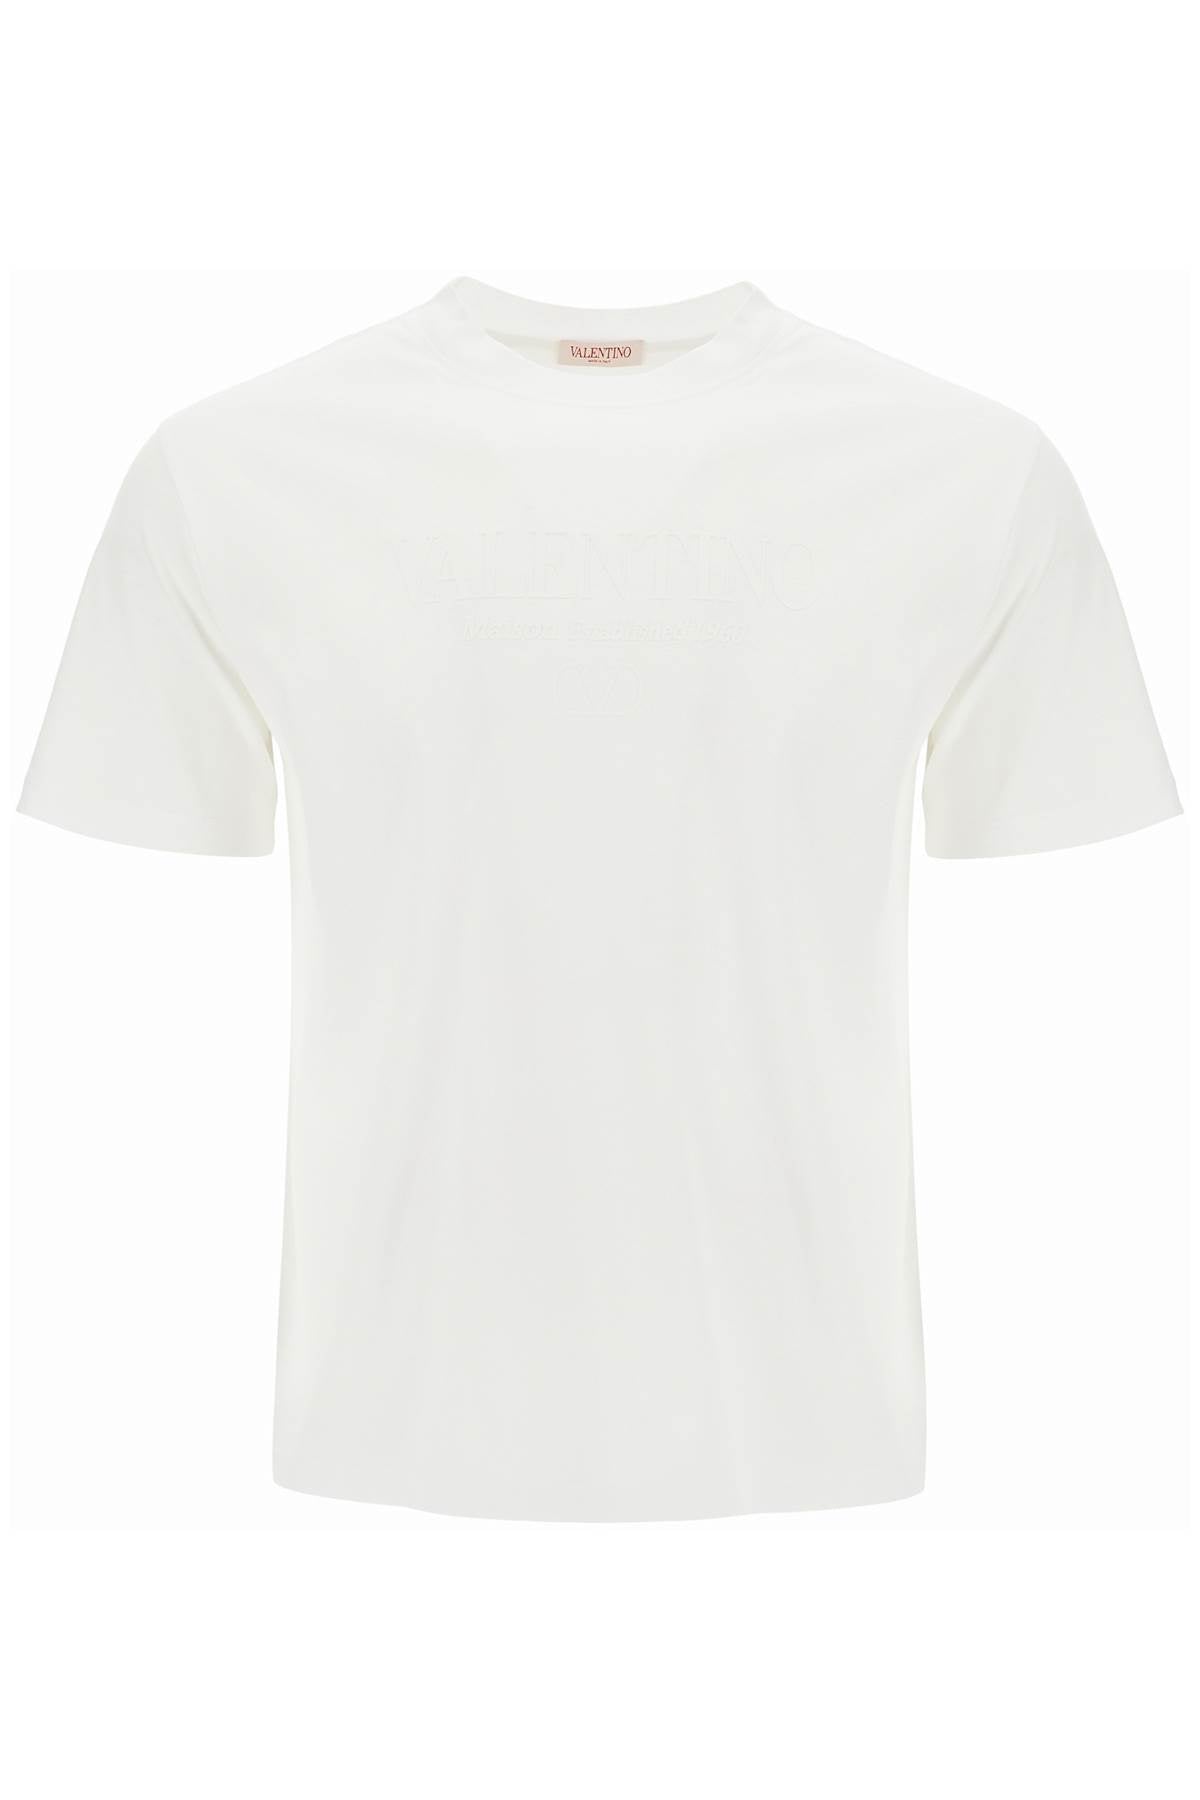 Valentino GARAVANI t-shirt with logo print - White